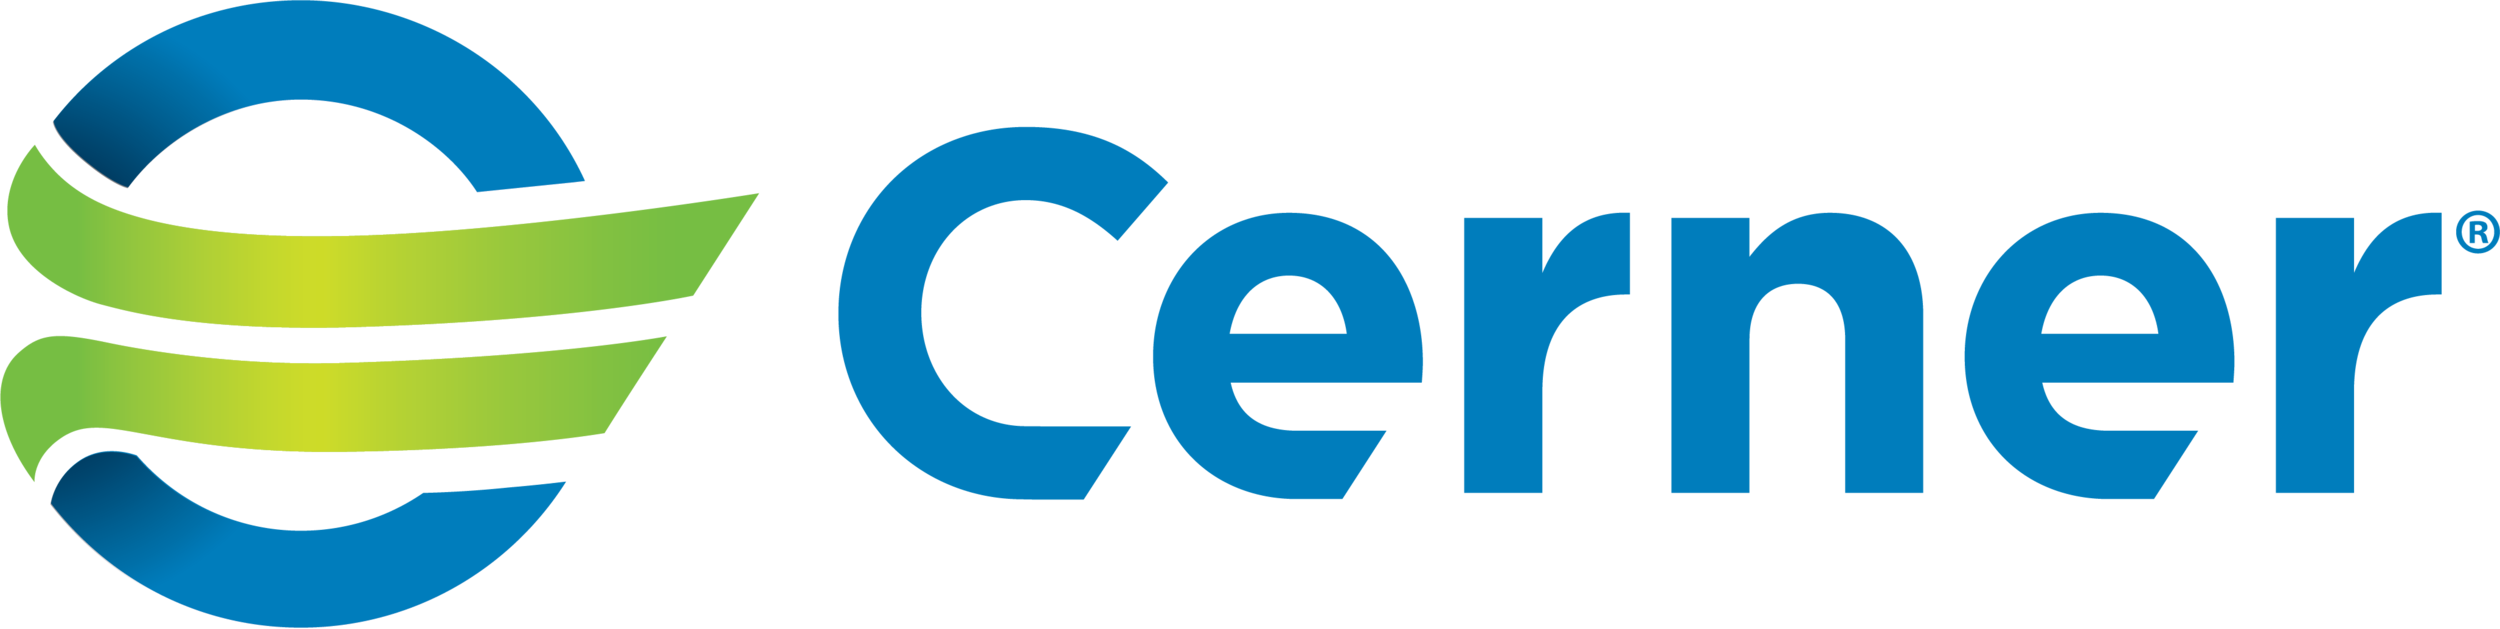 Cerner color logo horizontal.png